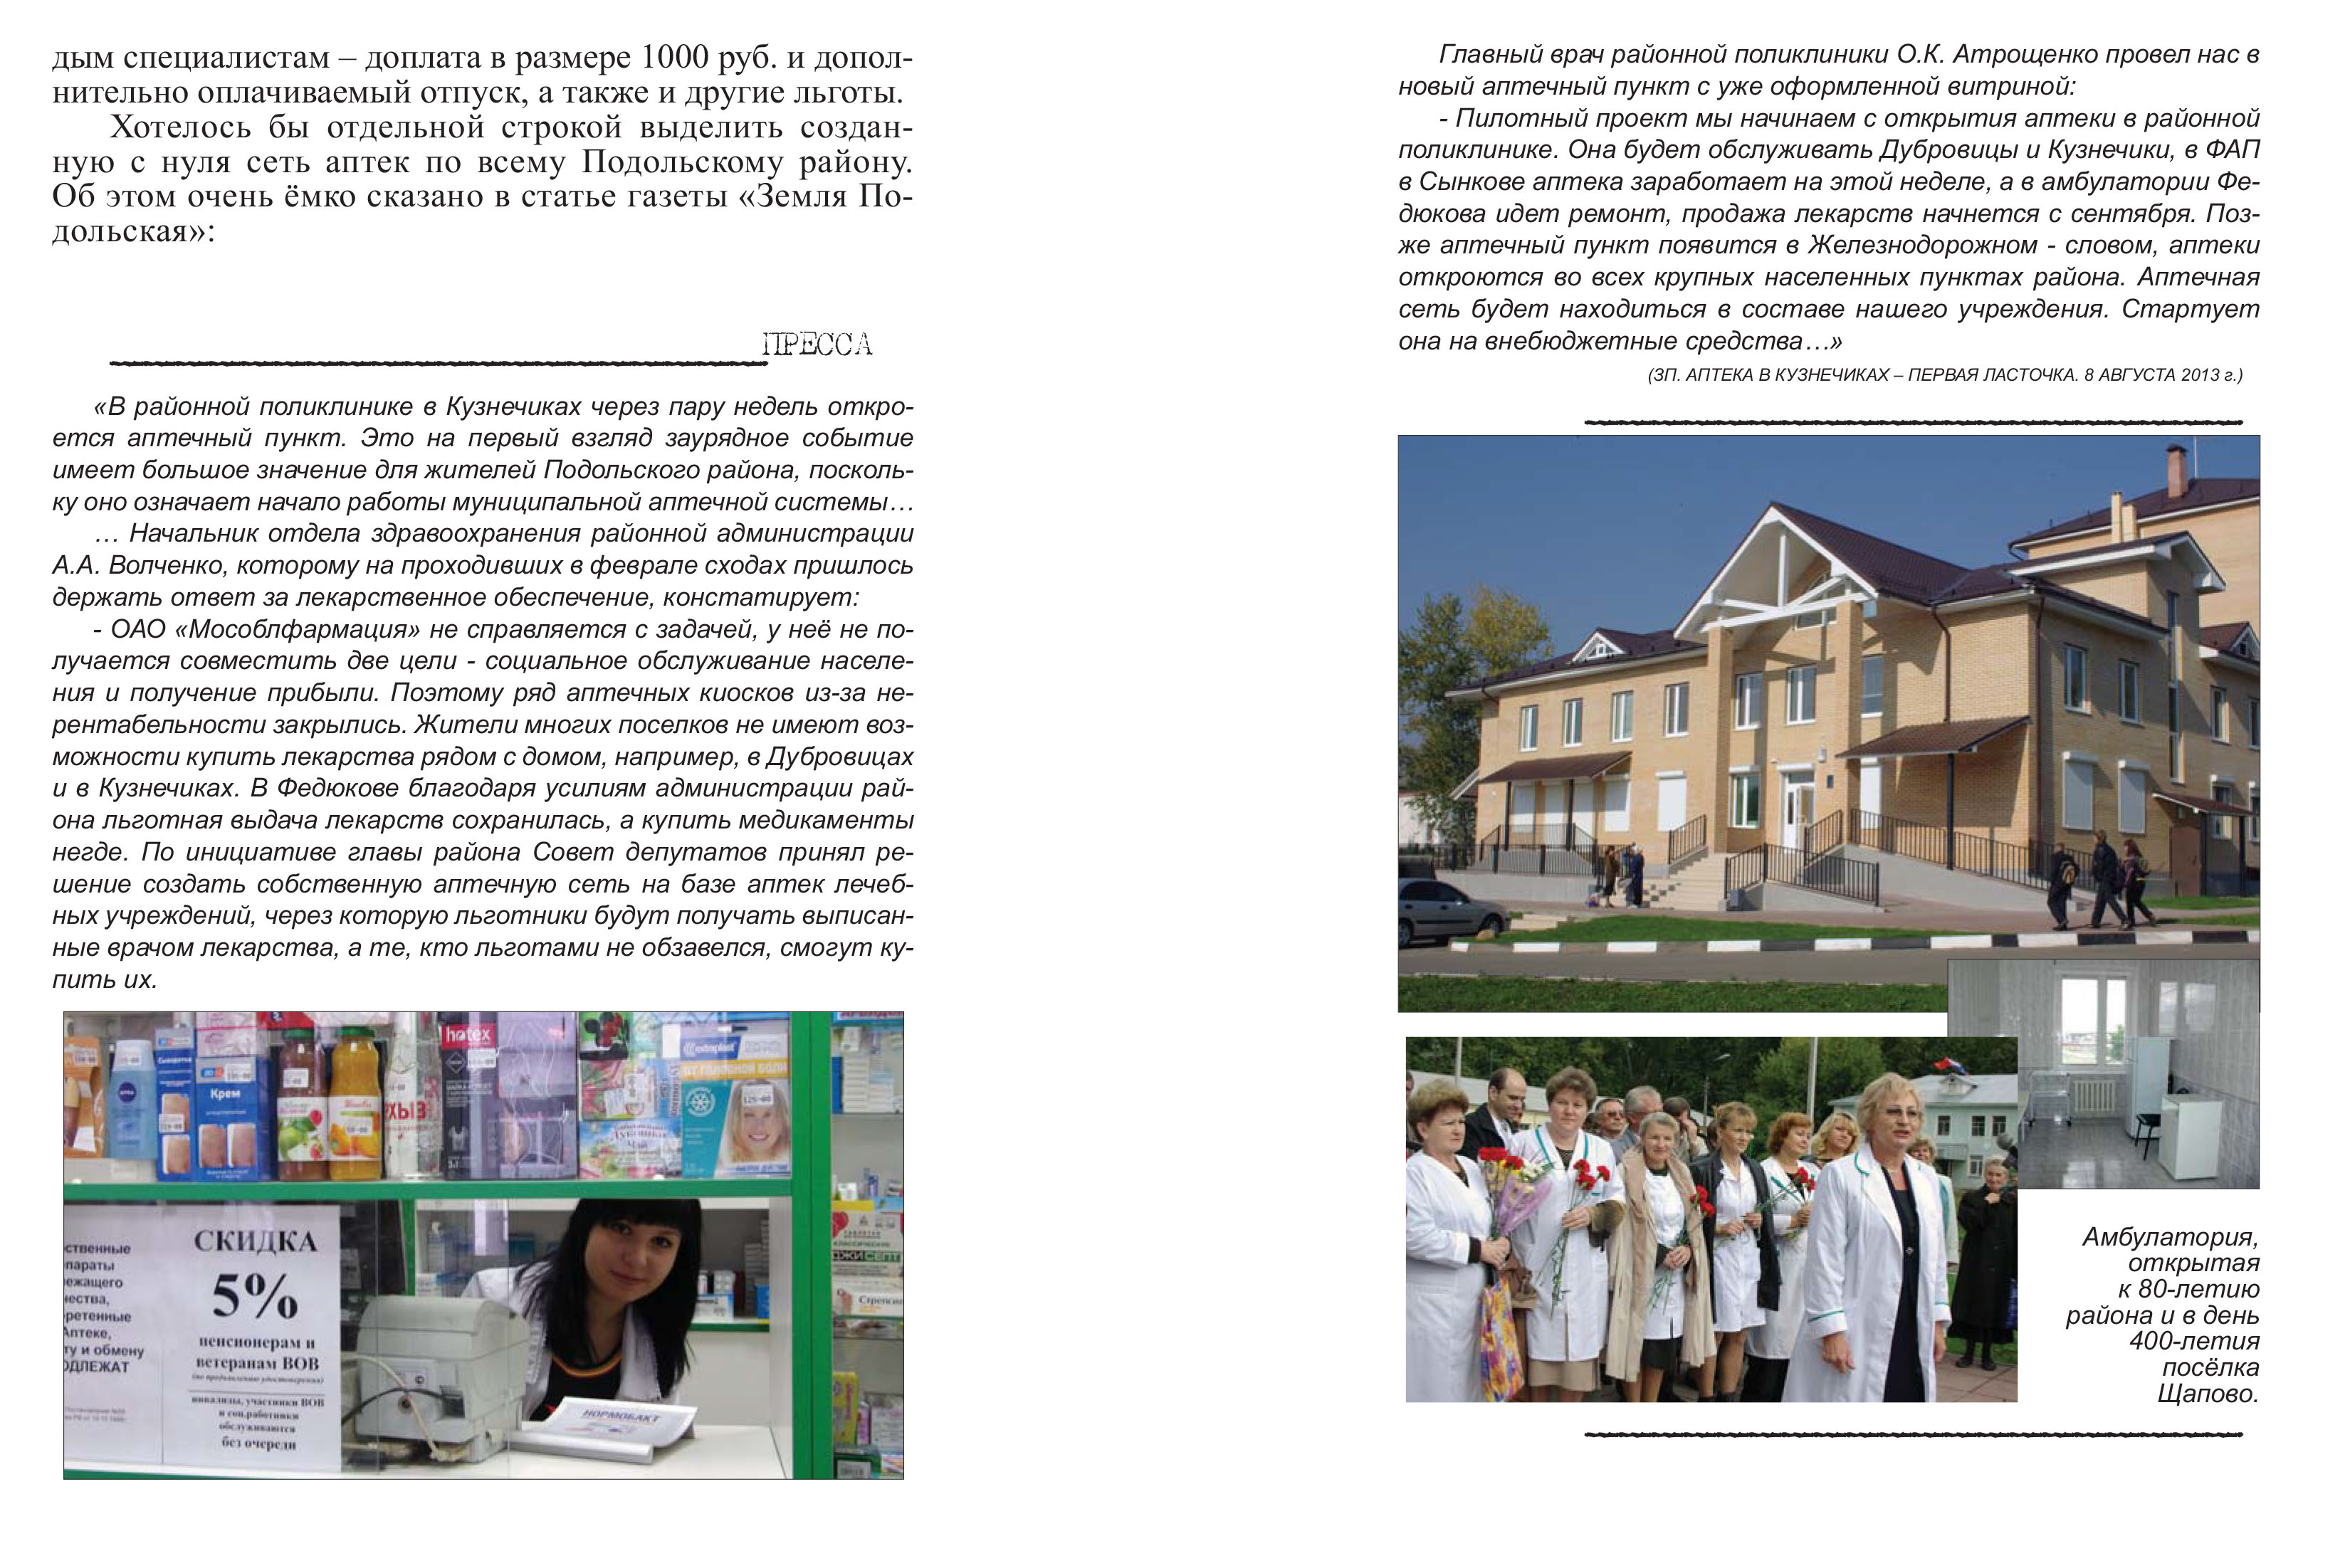 Развитие сферы здравоохранения в Подольском районе